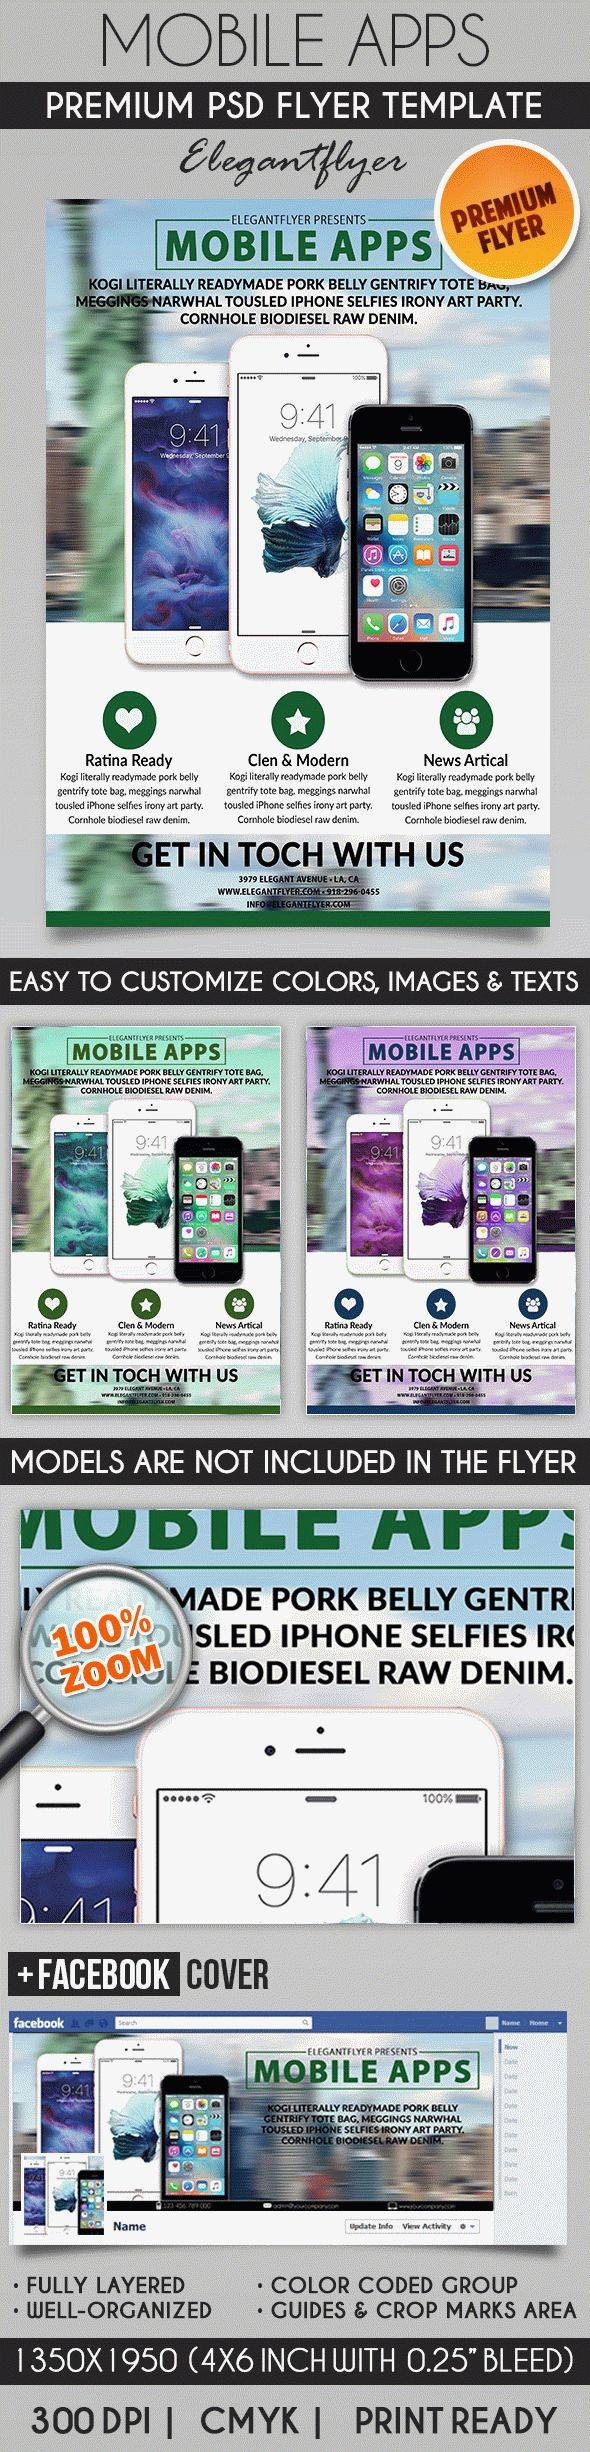 Mobile Apps Promotion by ElegantFlyer